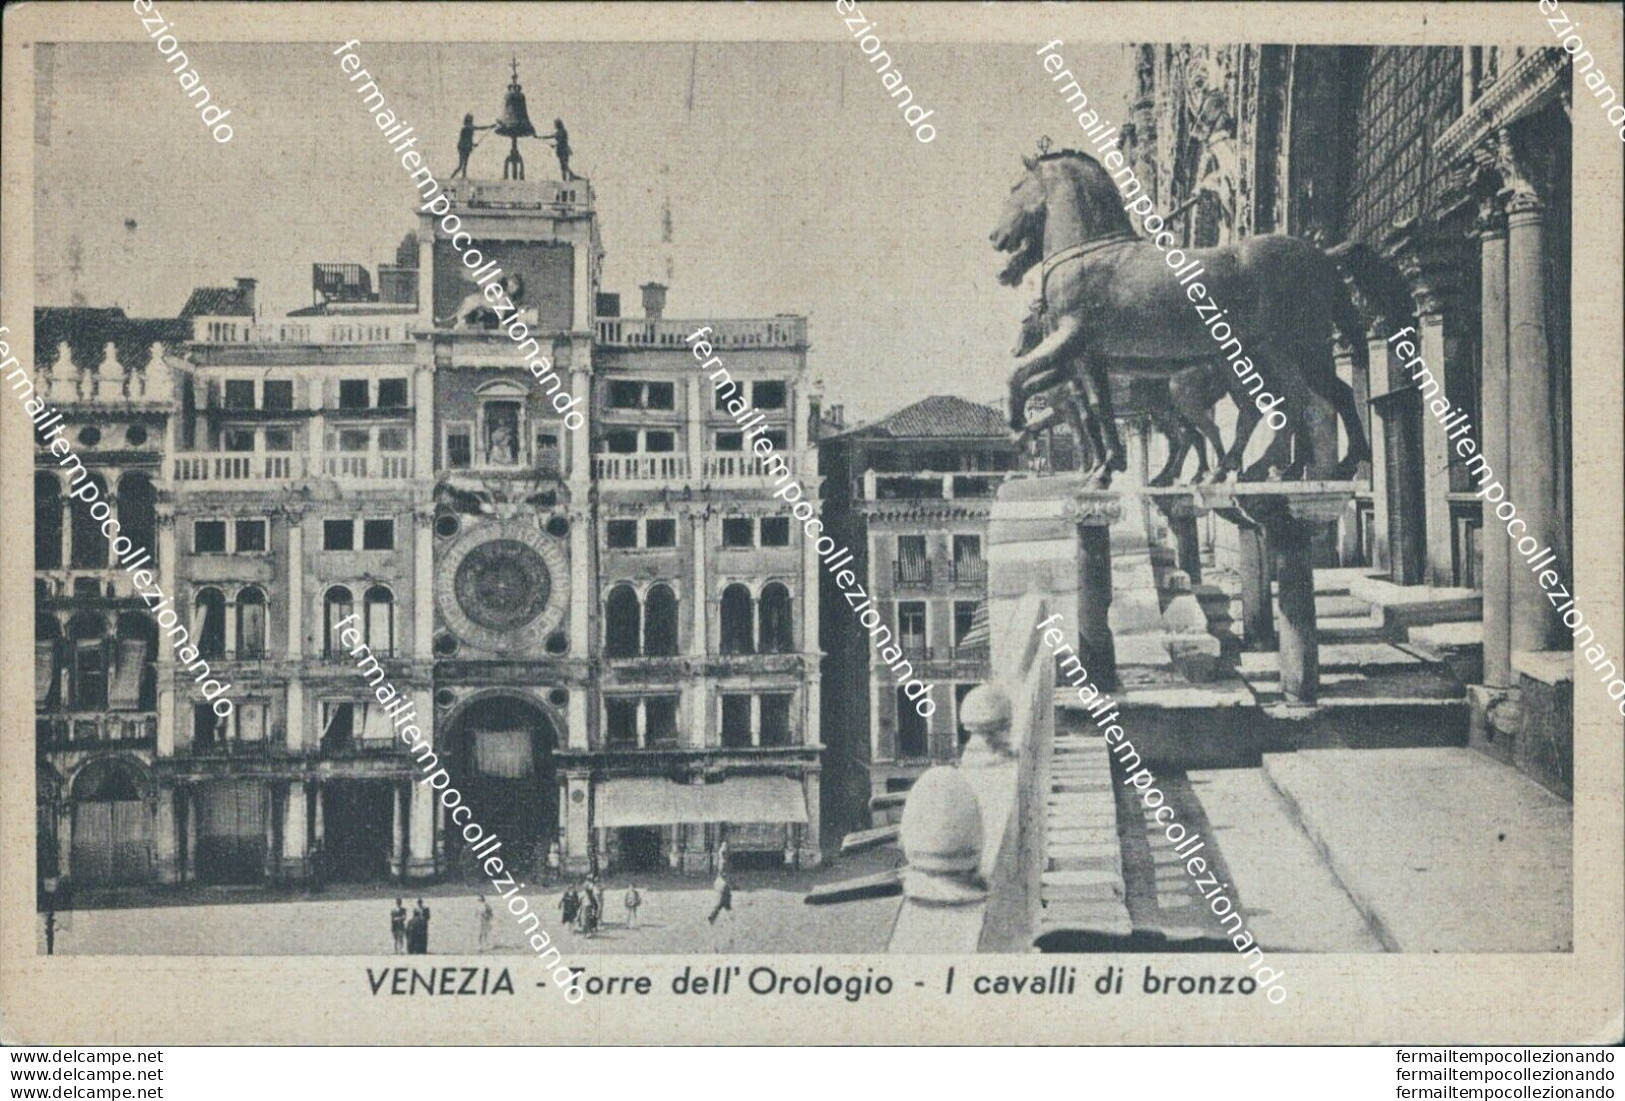 Bt333 Cartolina Venezia Citta' Torre Dell'orologio I Cavalli Di Bronzo Veneto - Venezia (Venice)